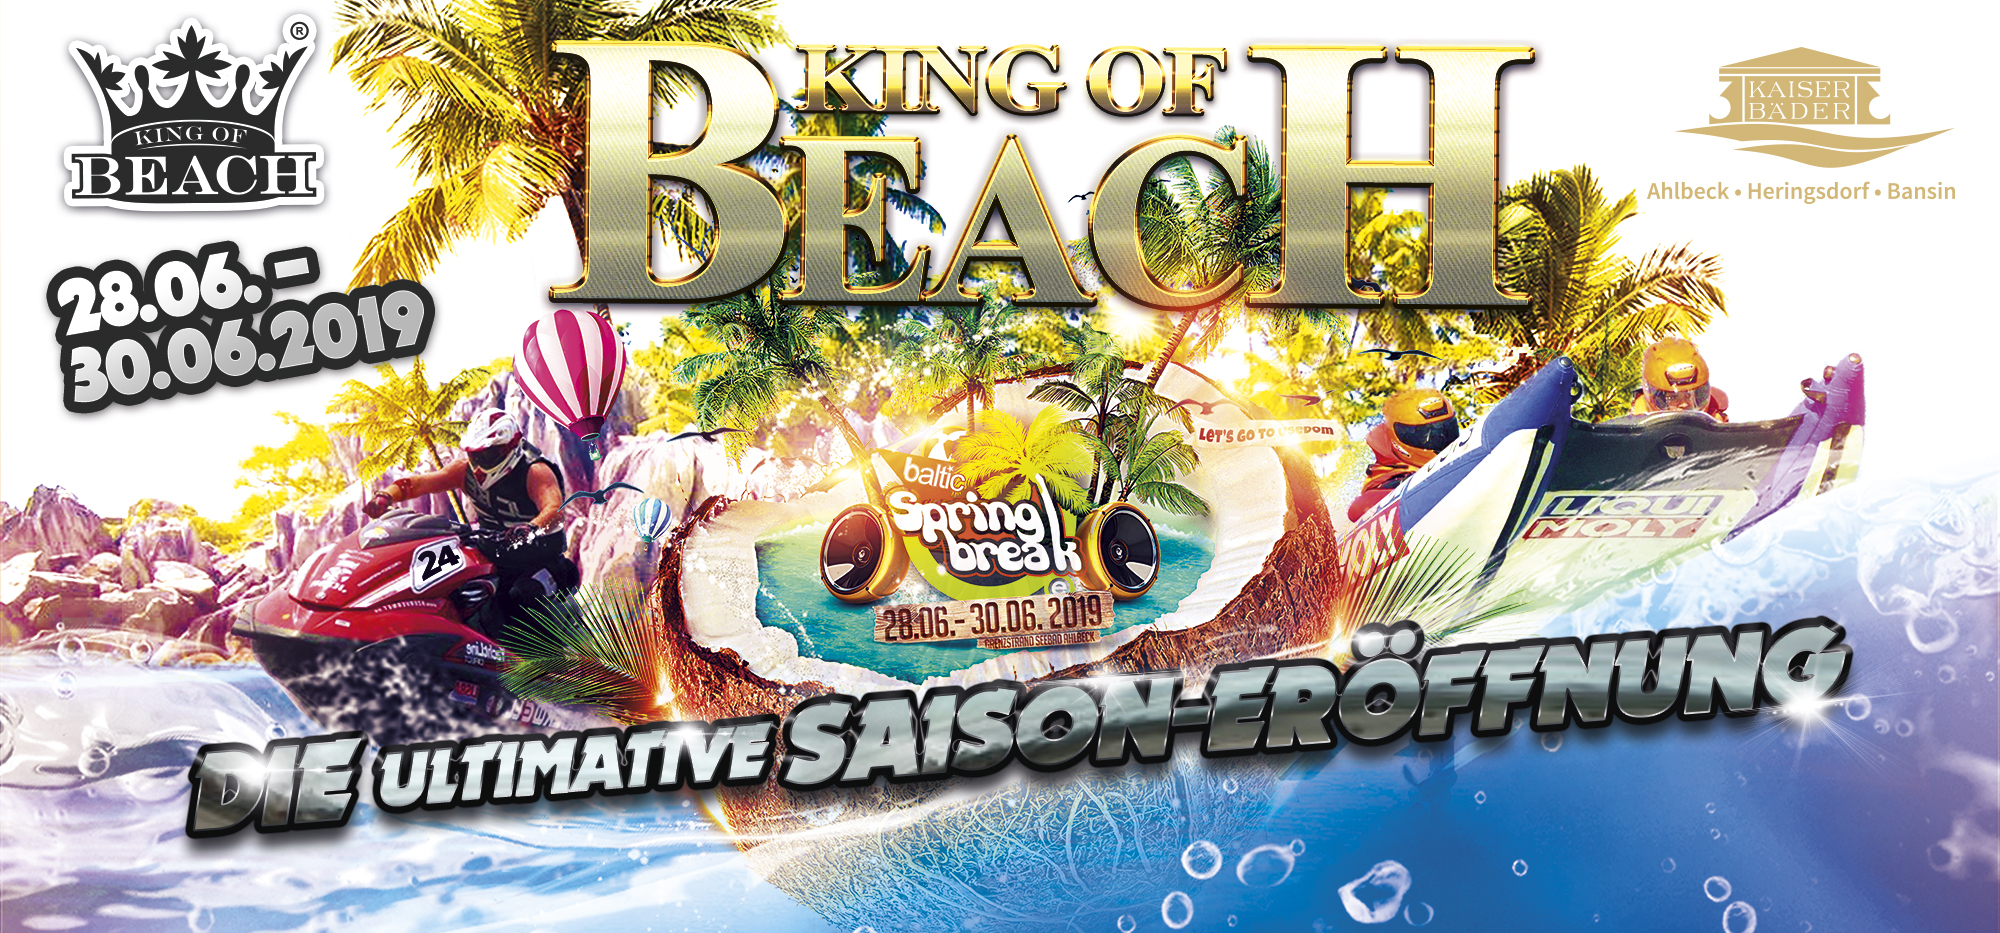 King of Beach Das WassersportKultEvent auf der Insel Usedom